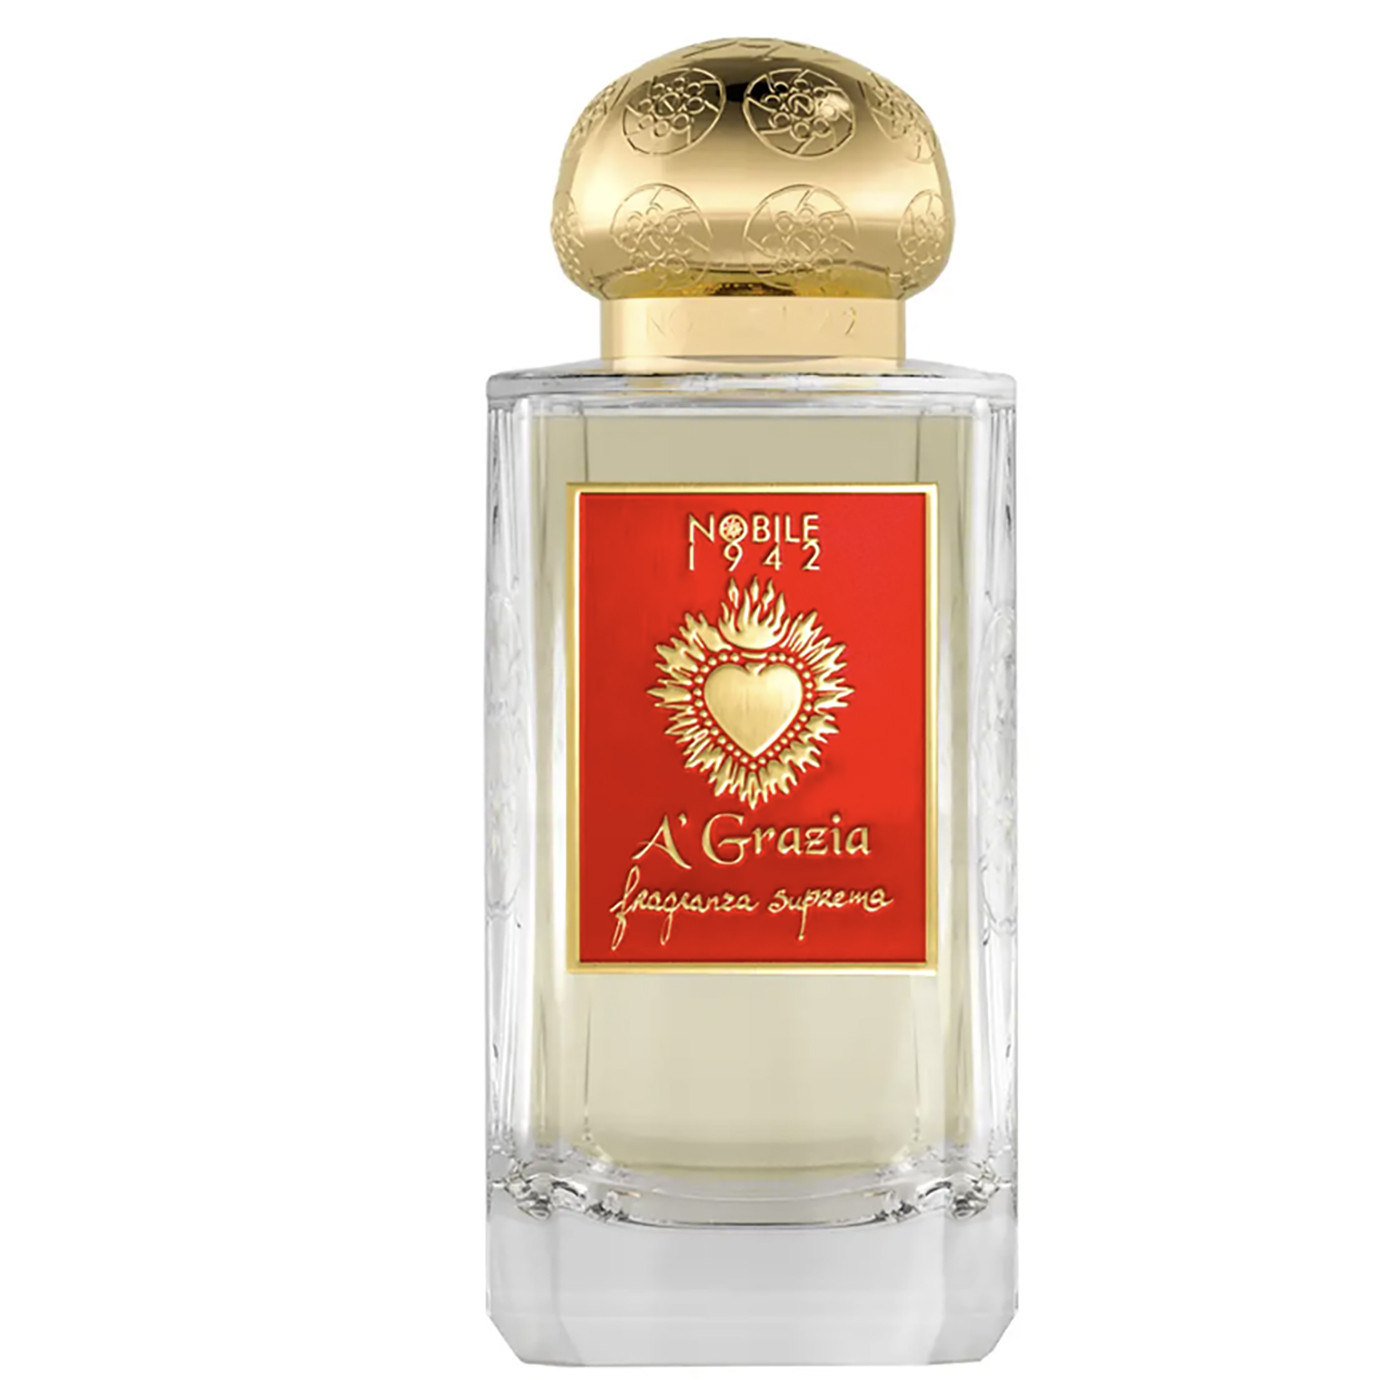 A' Grazia Eau de Parfum 75ml - Nobile 1942